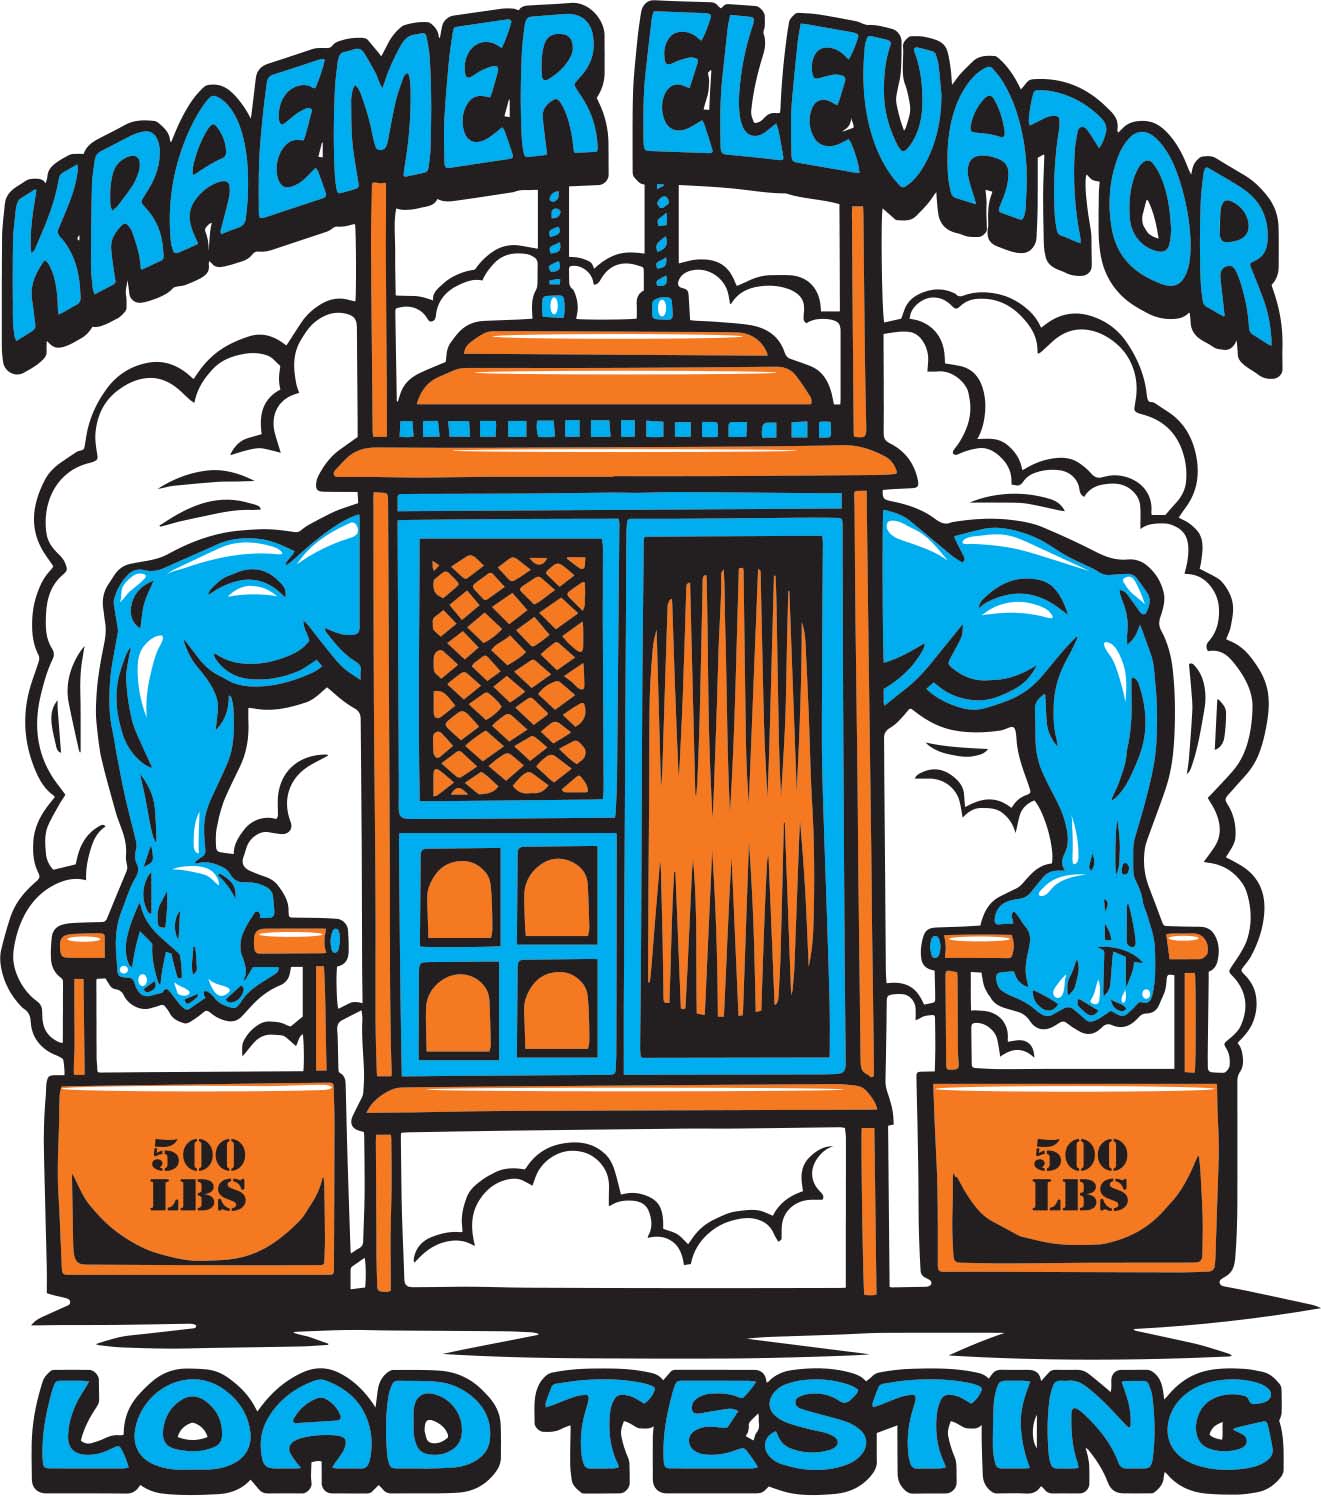 Kraemer Elevator Load Testing